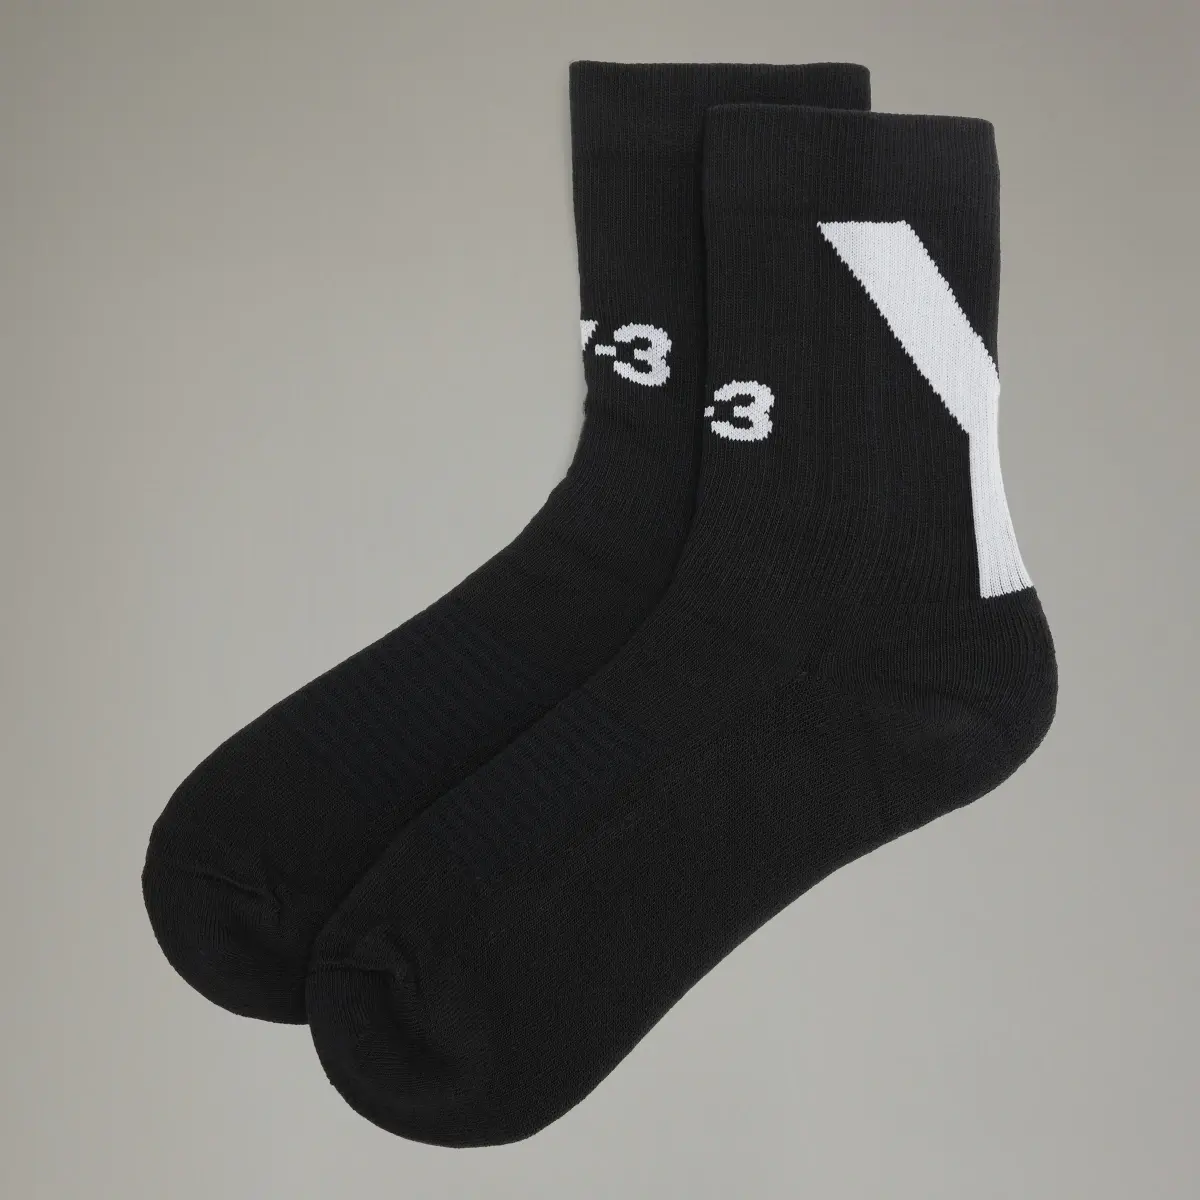 Adidas Y-3 Hi Socks. 1